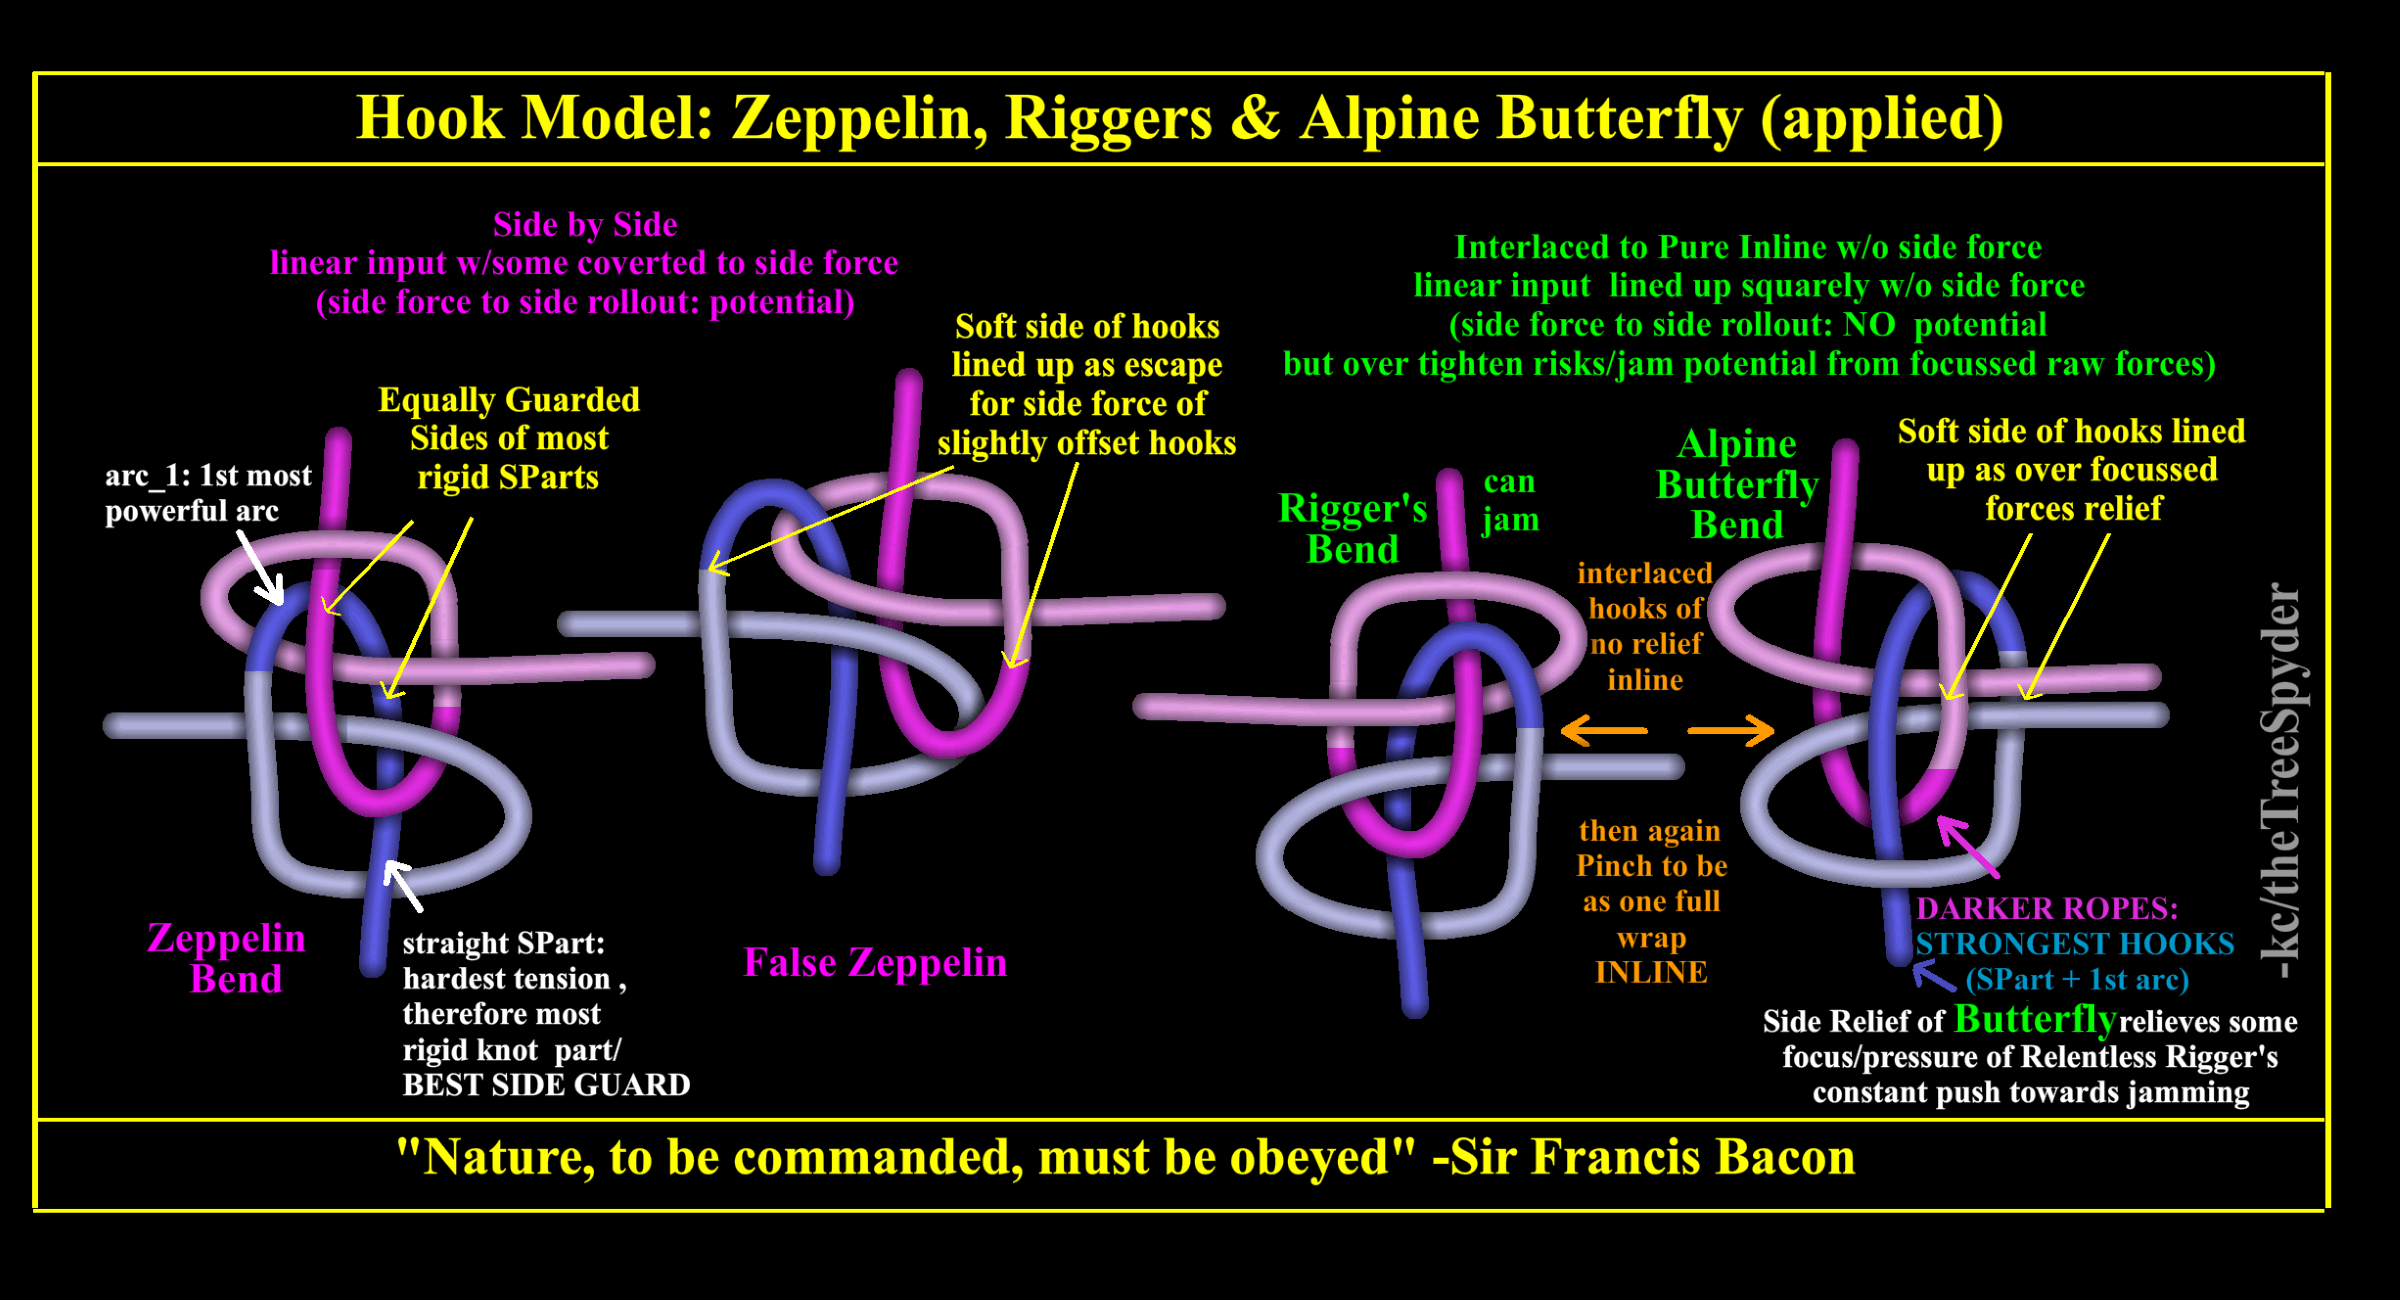 Hook-model-zeppelin-riggers-alpine-butterfly-applied.png